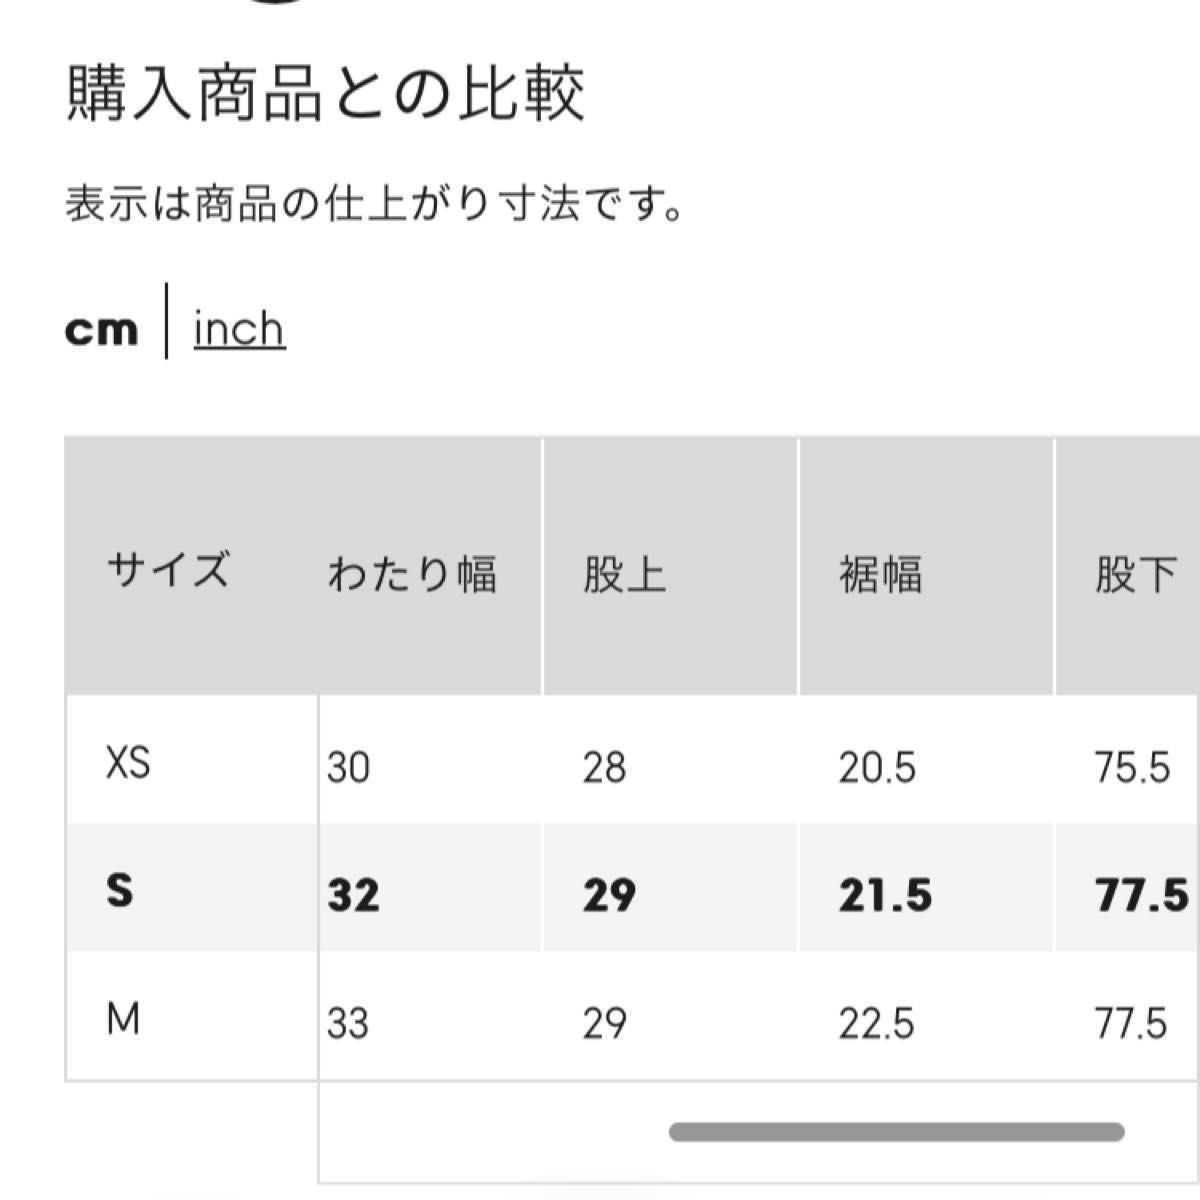 【新作】GU コクーンジョガープルオンパンツA+EC (丈長め75.5-77.5cm) S ピンク パラシュート ワイドパンツ 